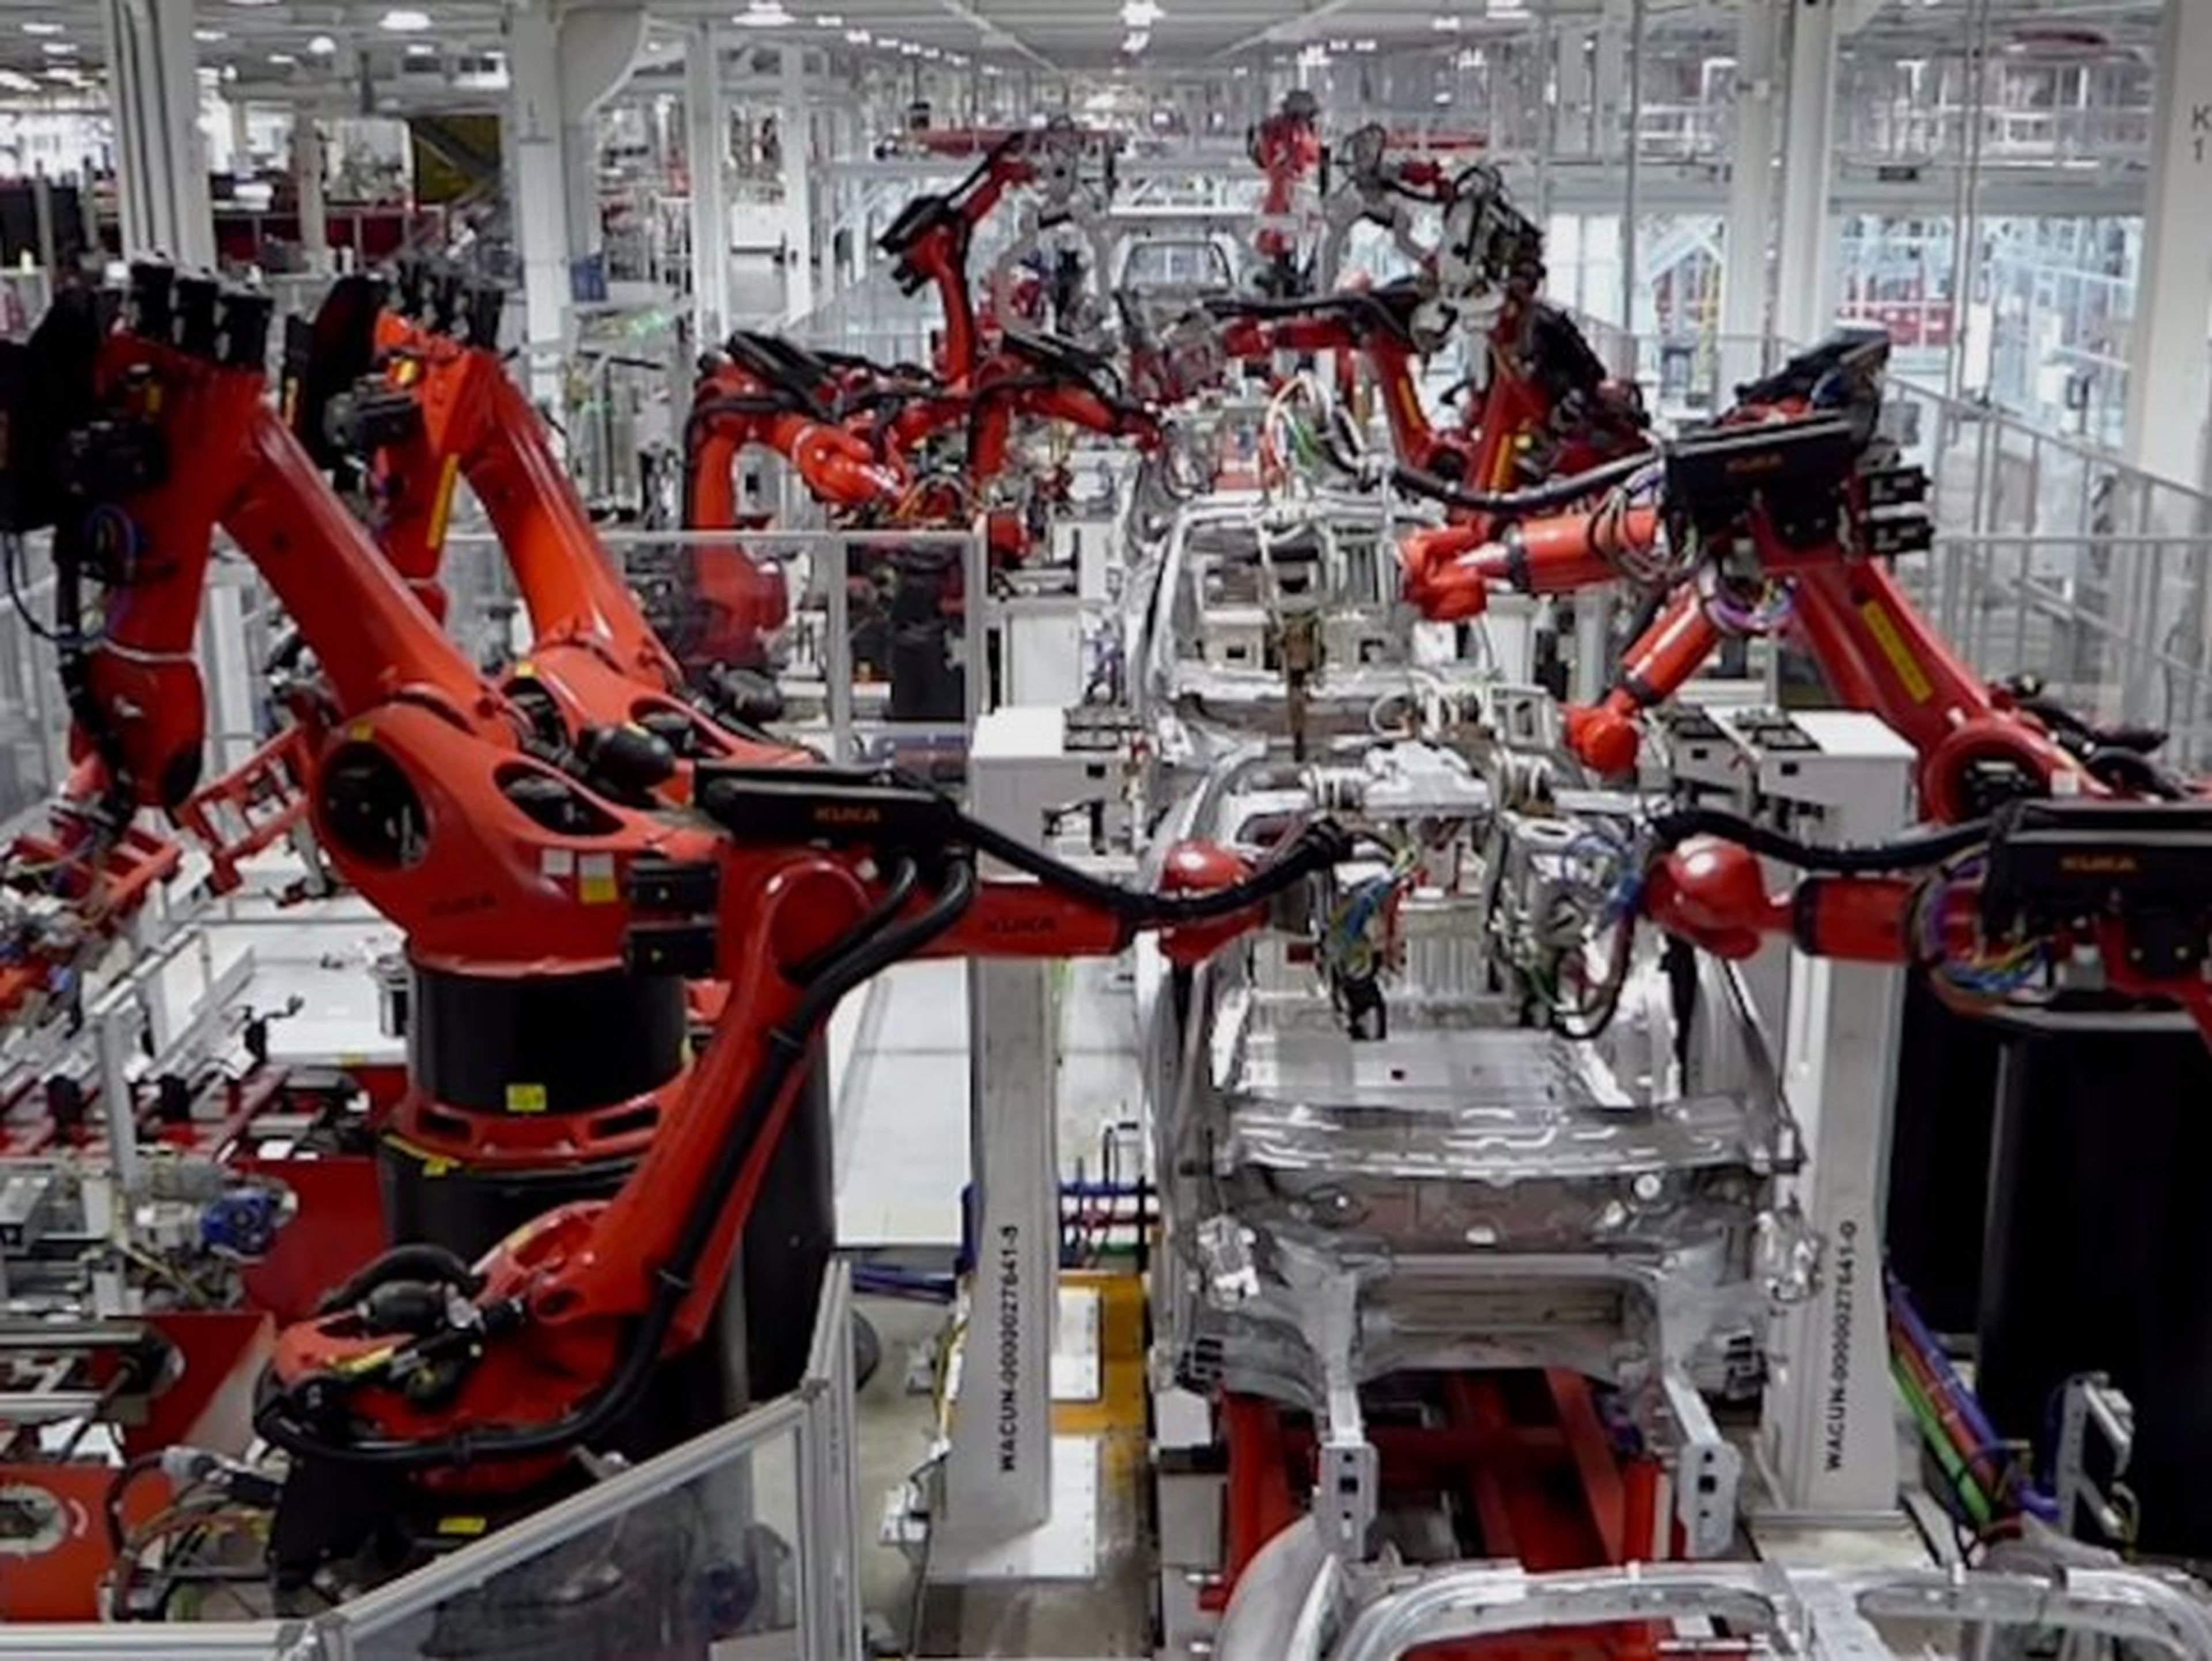 Maquinas robots fabrican productos en una cadena de produccion